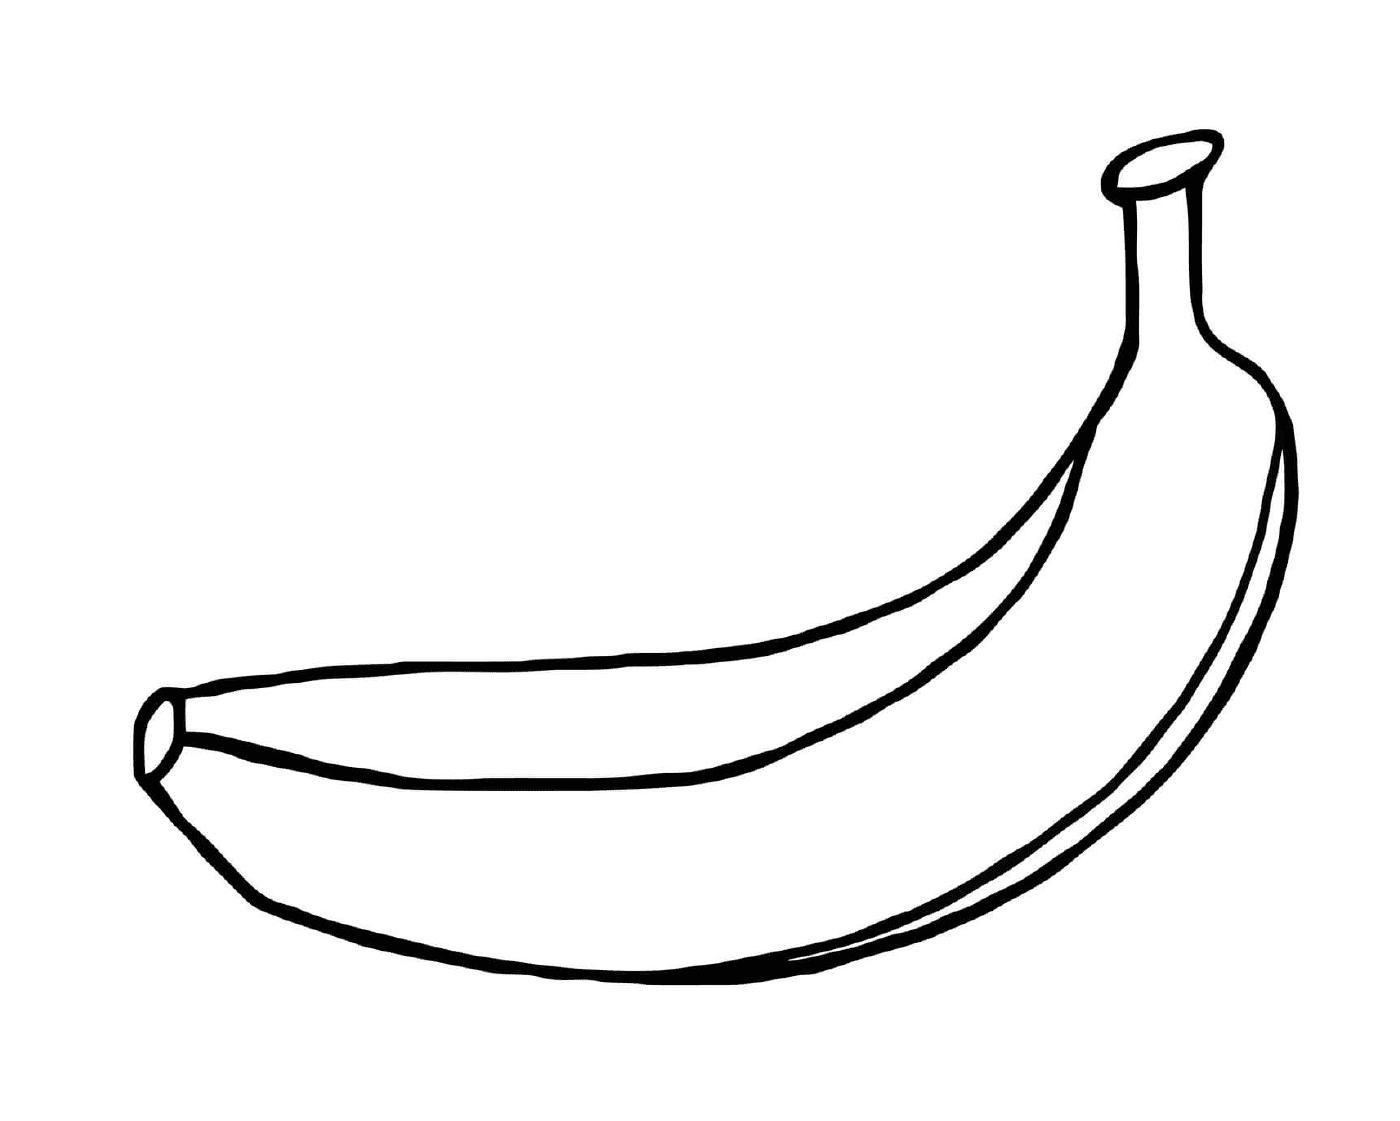  A banana 